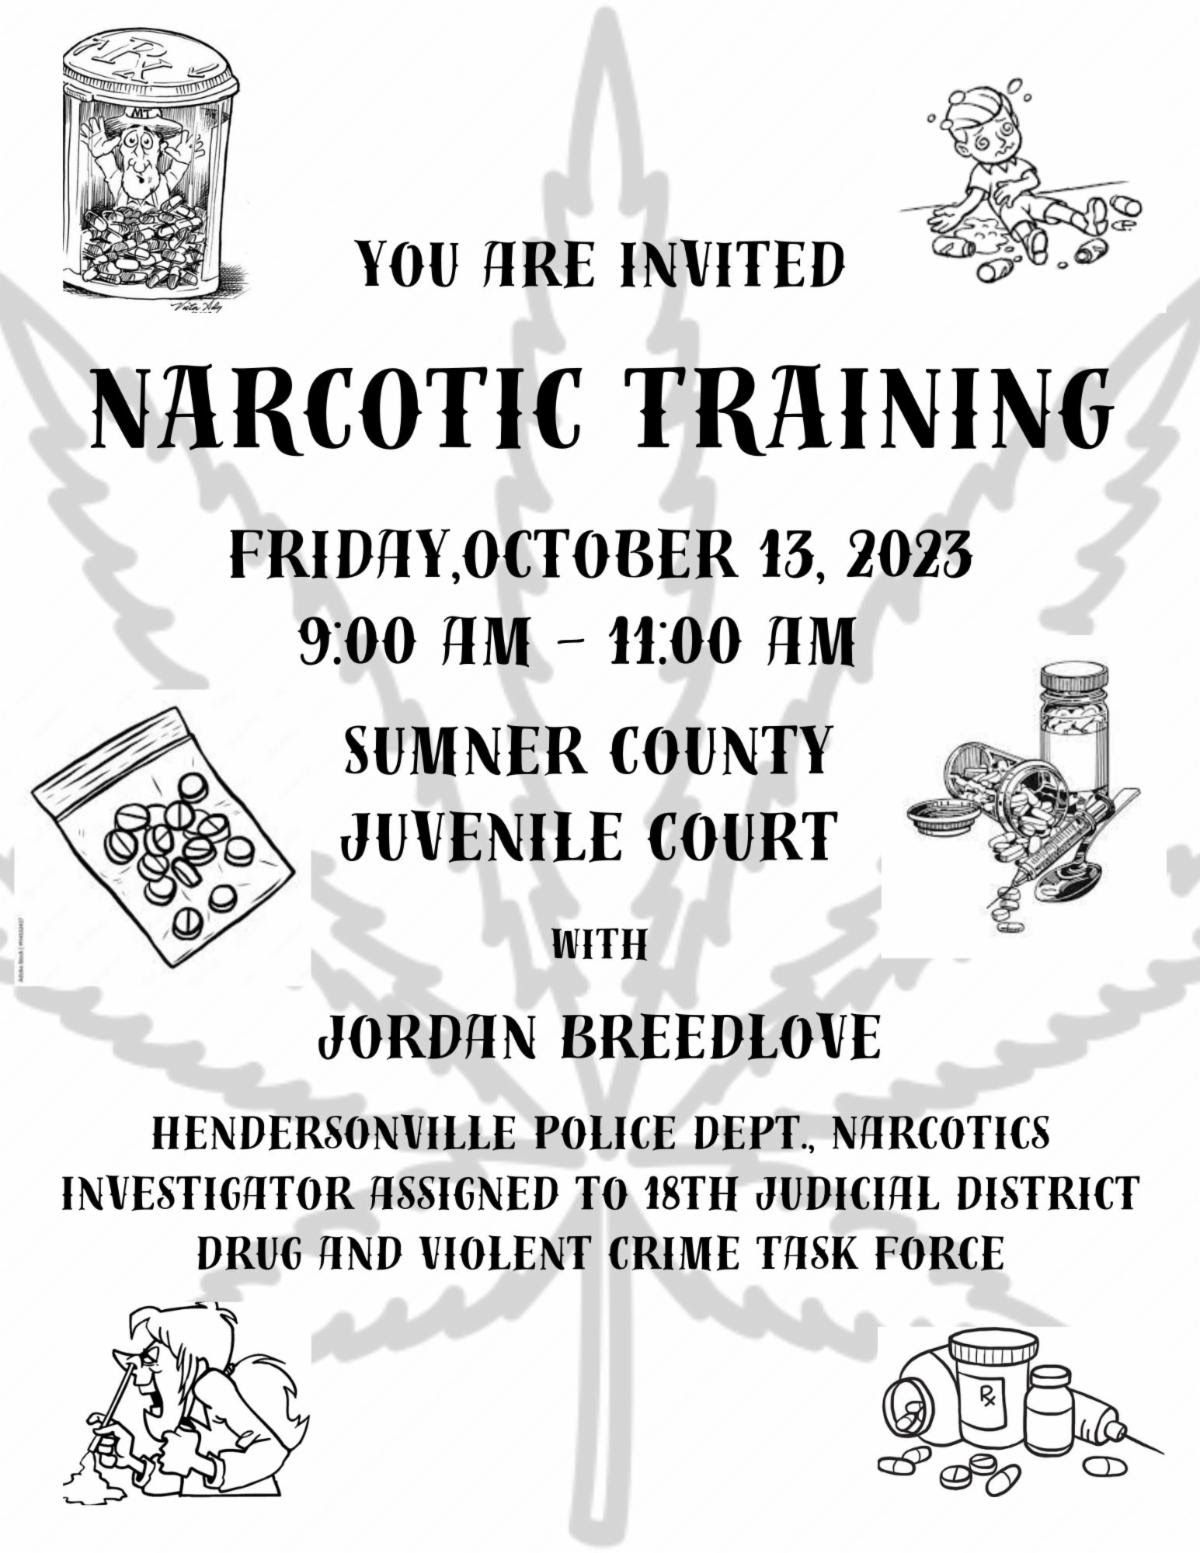 image of flyer for narcotics training at Sumner Juvenile court